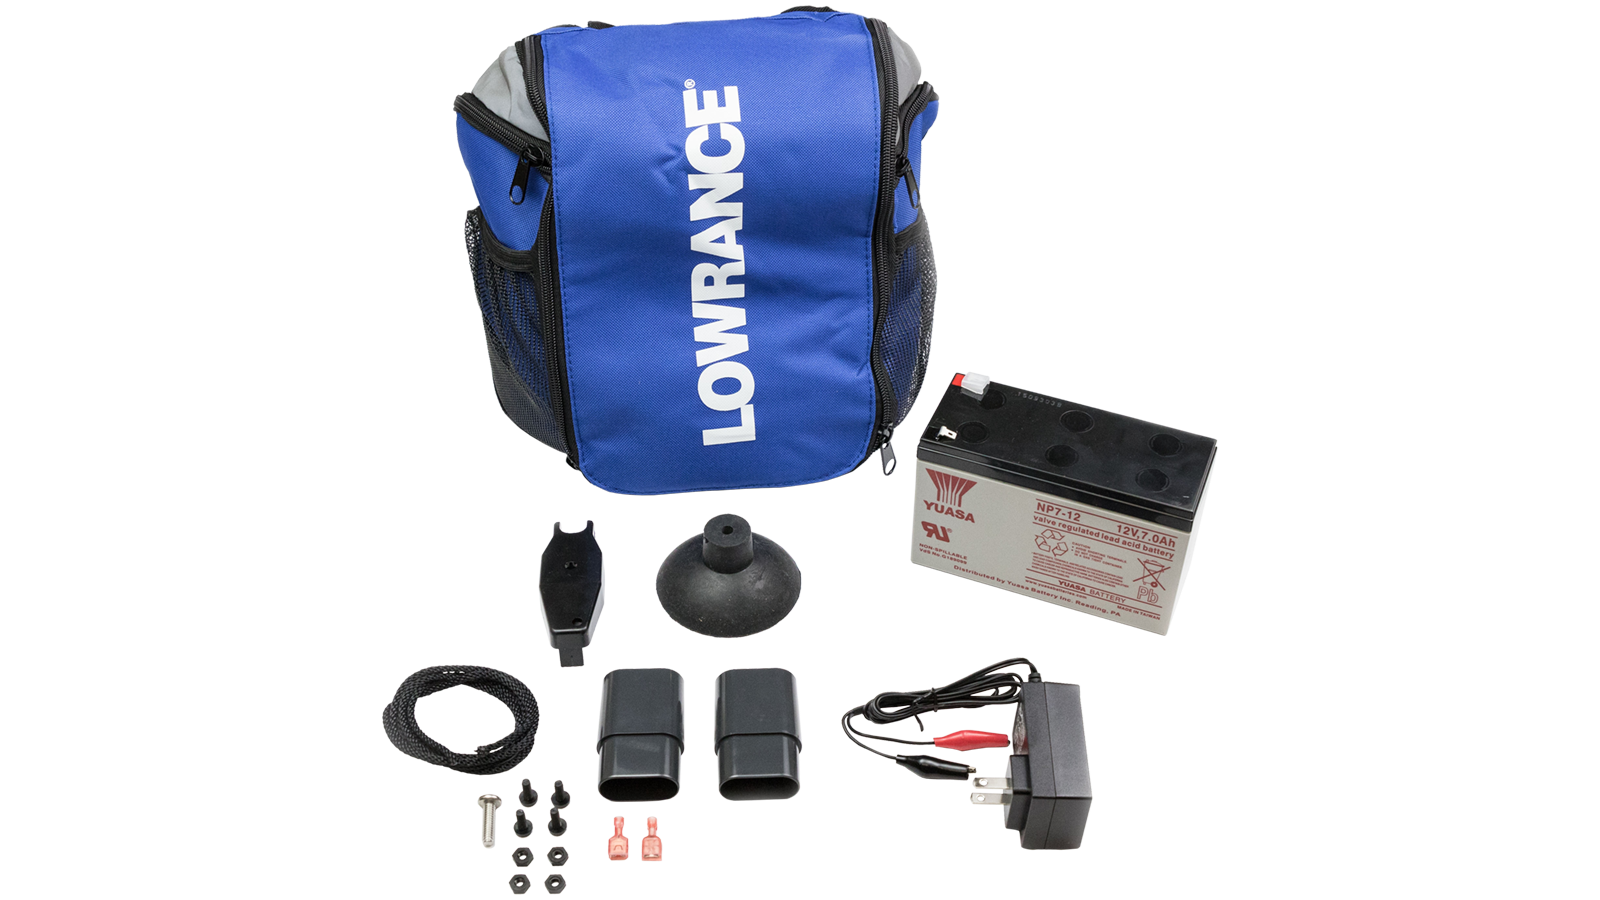 Lowrance Ventouse Kit Pour Portable écumeur de Transducteur commande spéciale